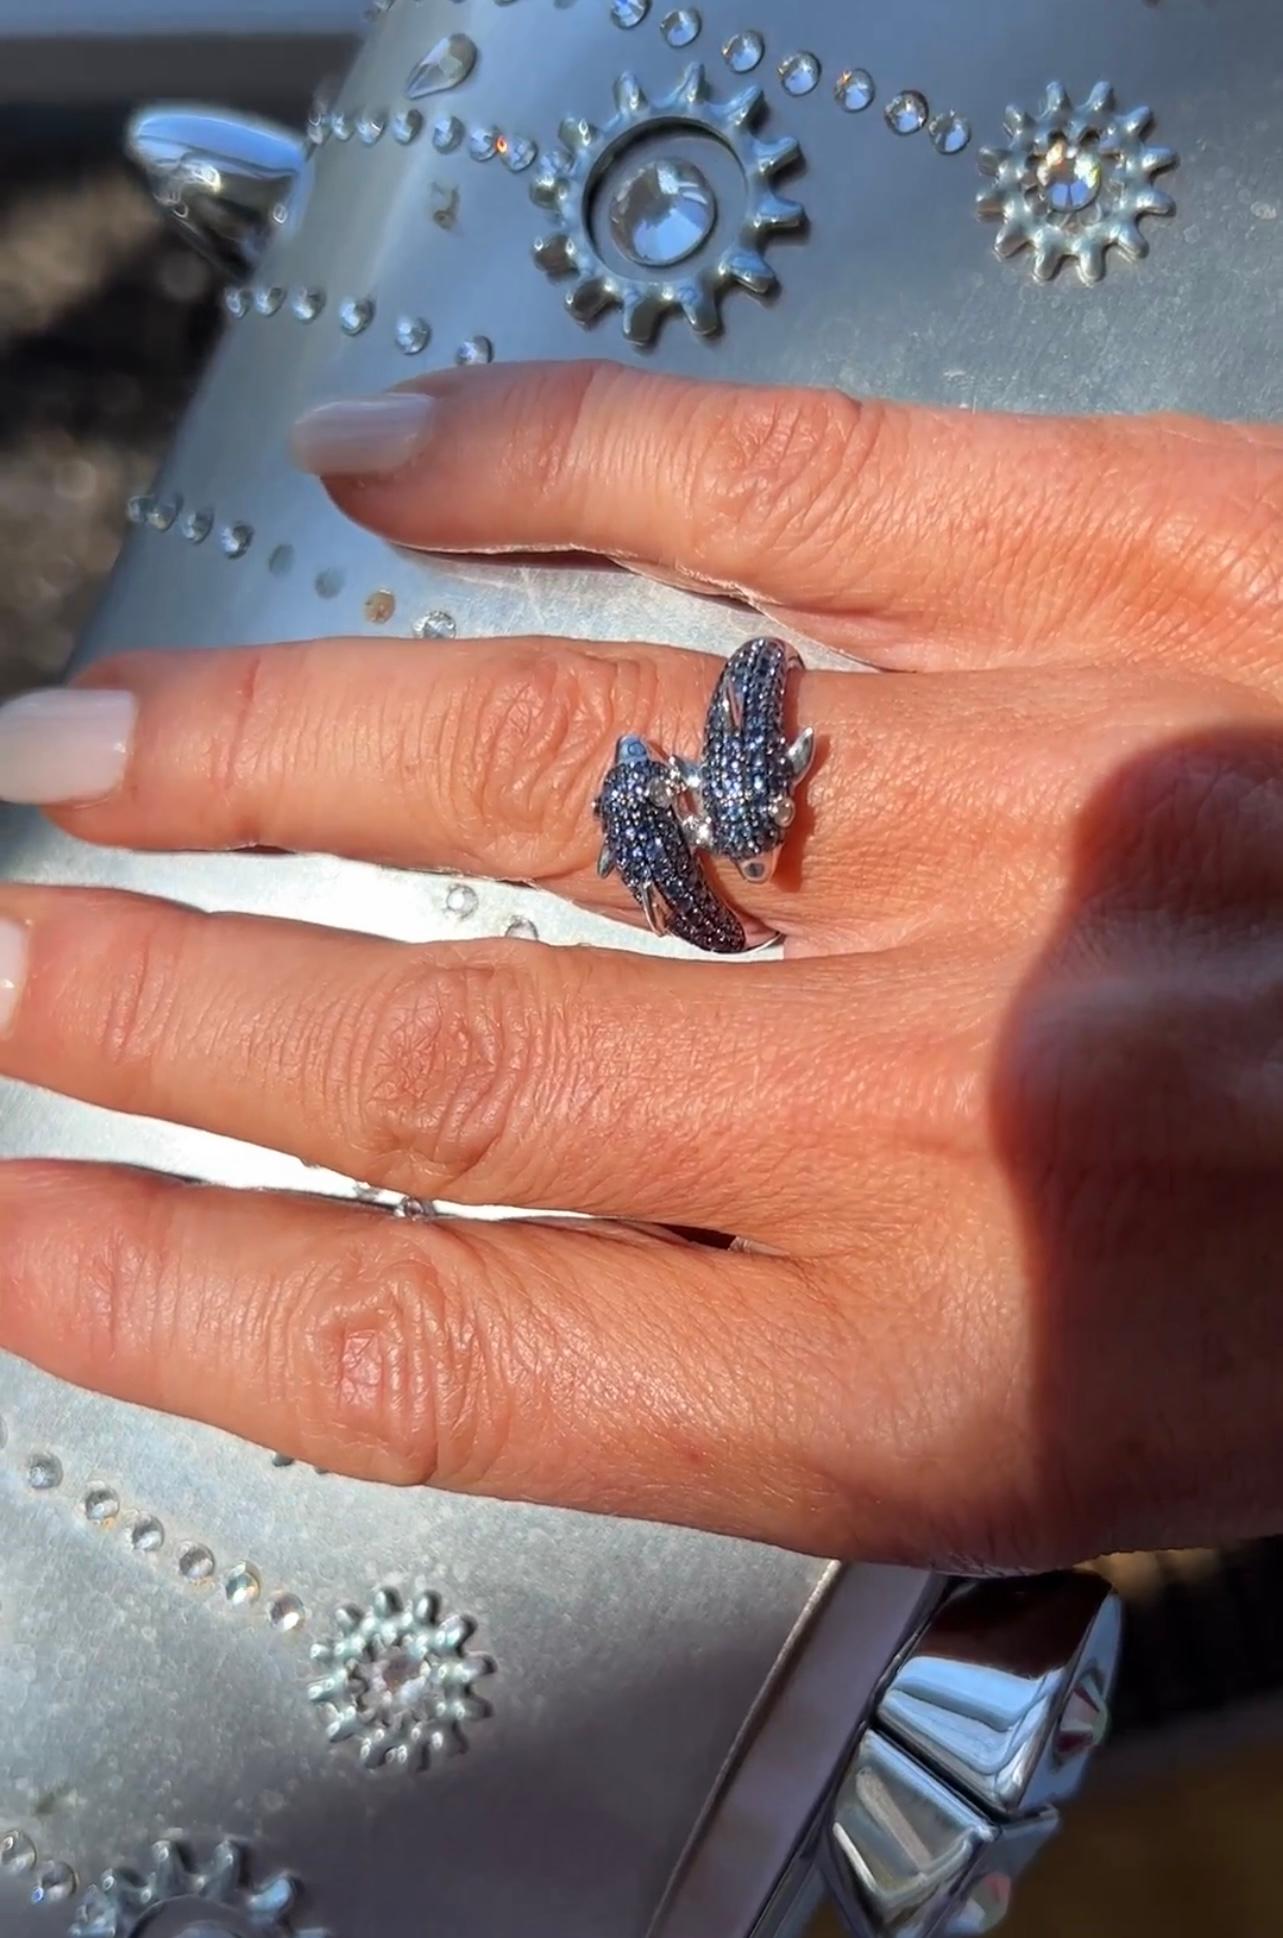 cornelius vanderbilt diamond ring